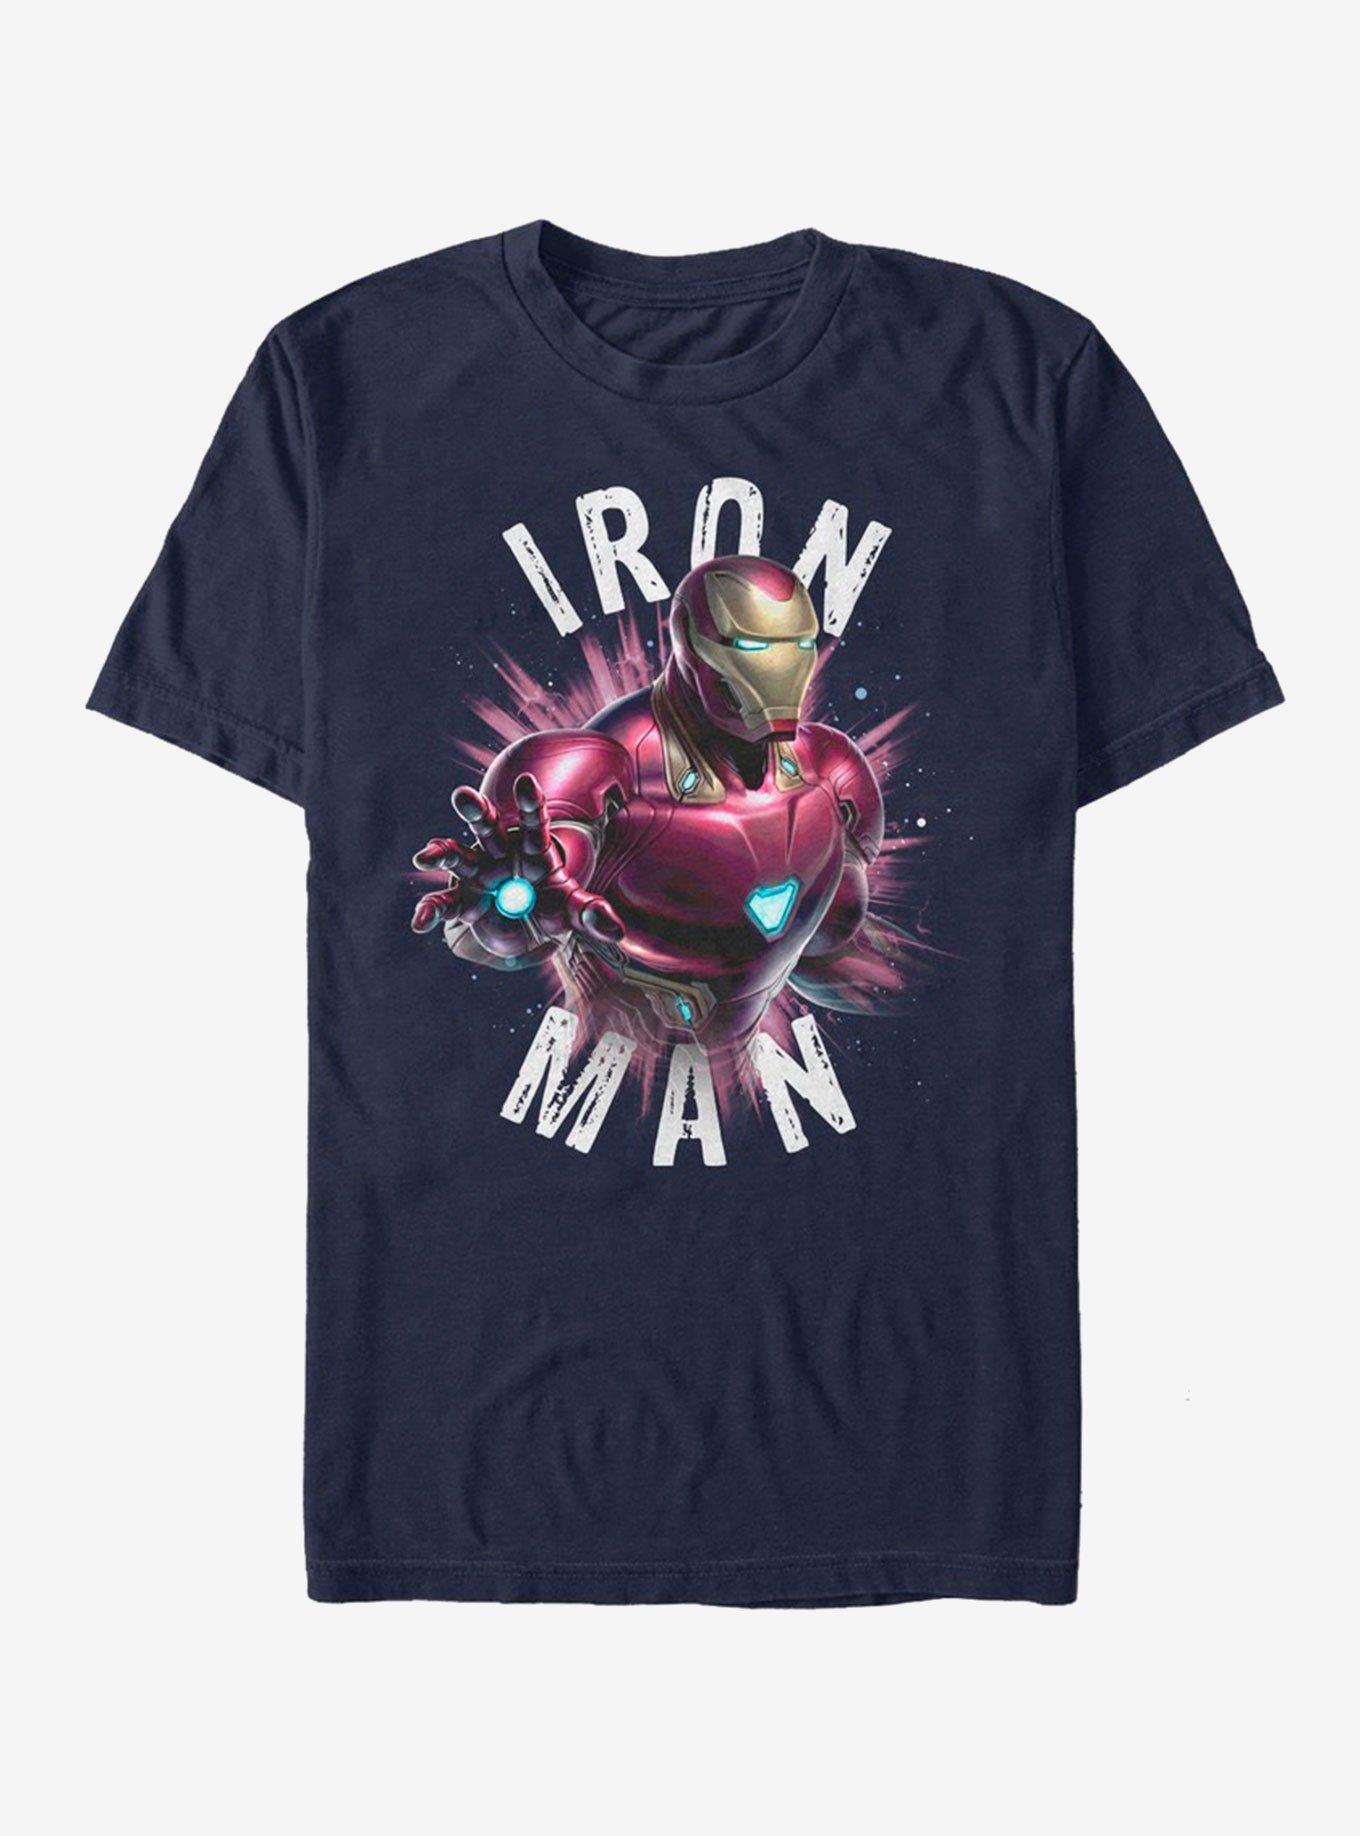 Marvel Avengers Endgame Iron Man Burst T-Shirt